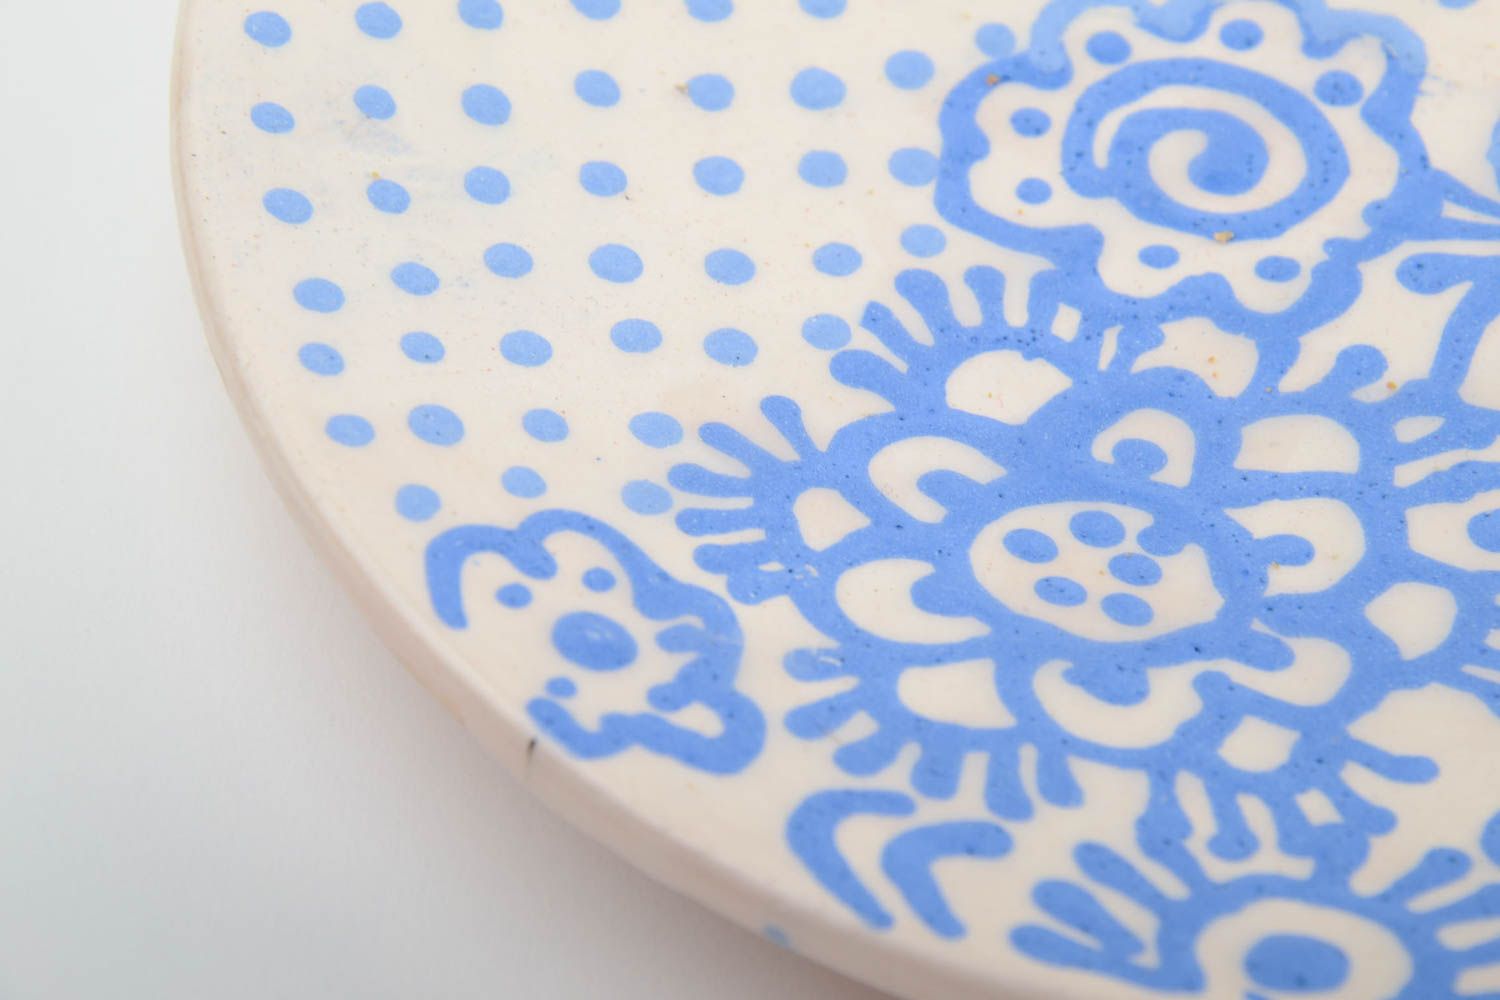 Blau weiße handmade Keramik Untertasse mit Muster klein schön glasiert foto 3